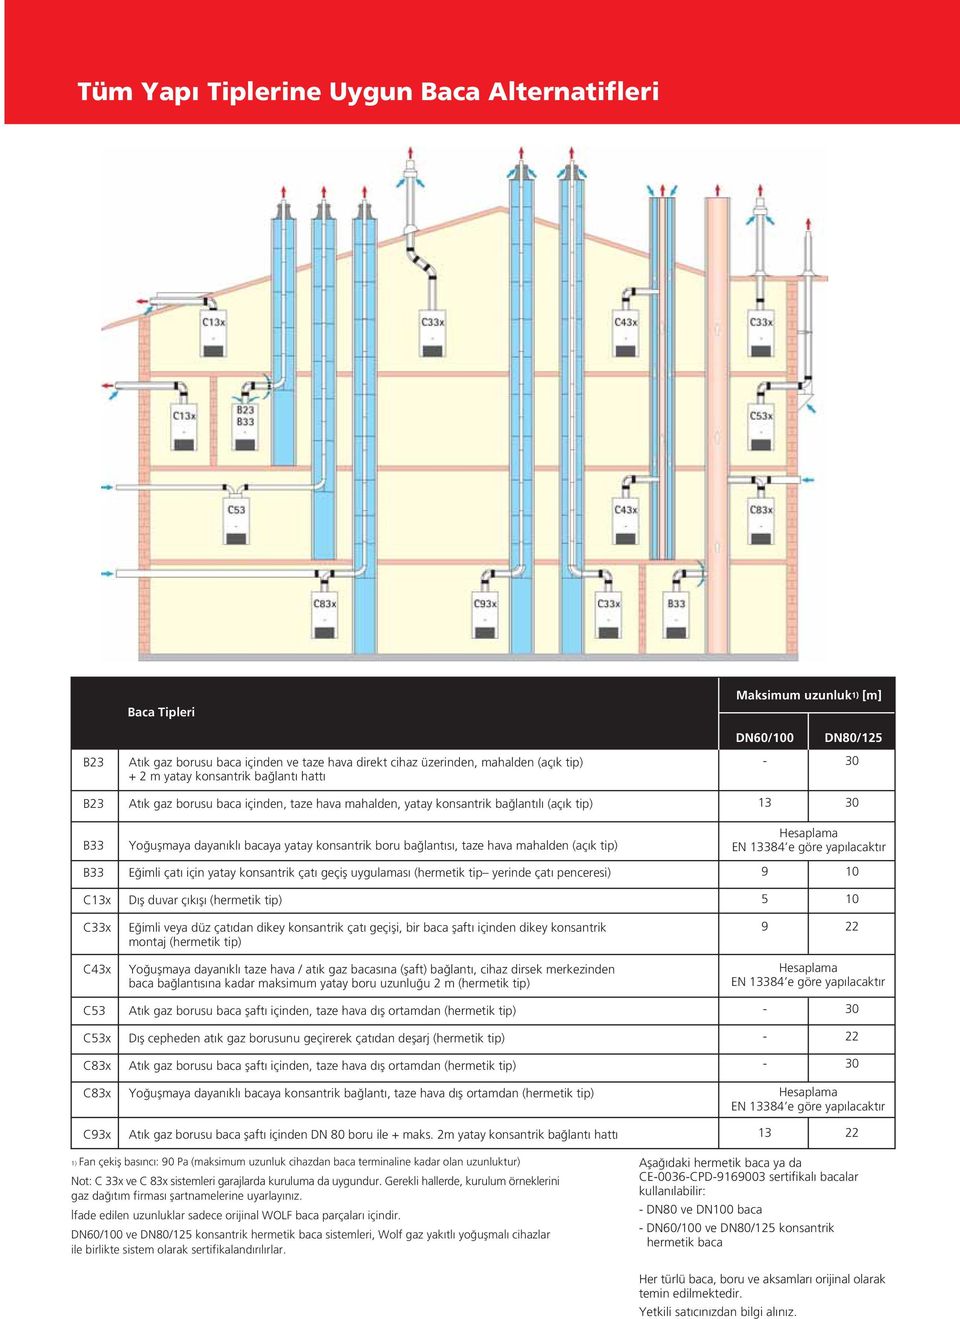 hava mahalden (aç k tip) Hesaplama EN 13384 e göre yap lacakt r B33 E imli çat için yatay konsantrik çat geçifl uygulamas (hermetik tip yerinde çat penceresi) 9 10 C13x D fl duvar ç k fl (hermetik